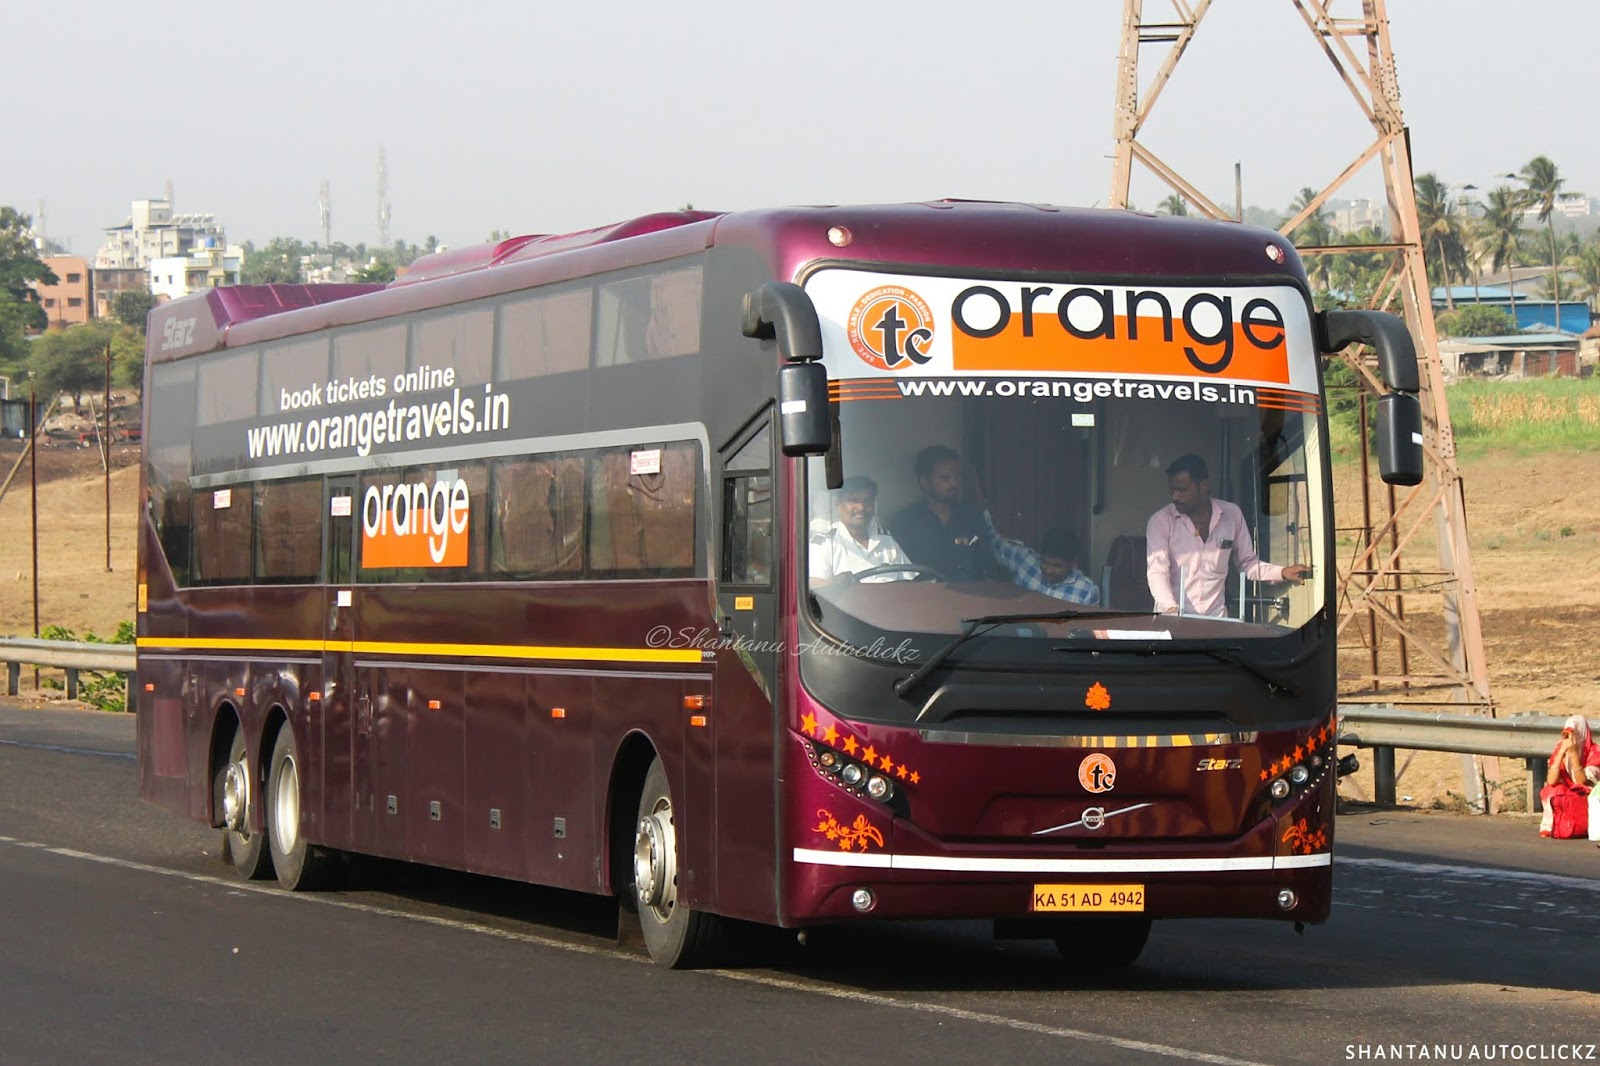 orange tours and travels mumbai maharashtra